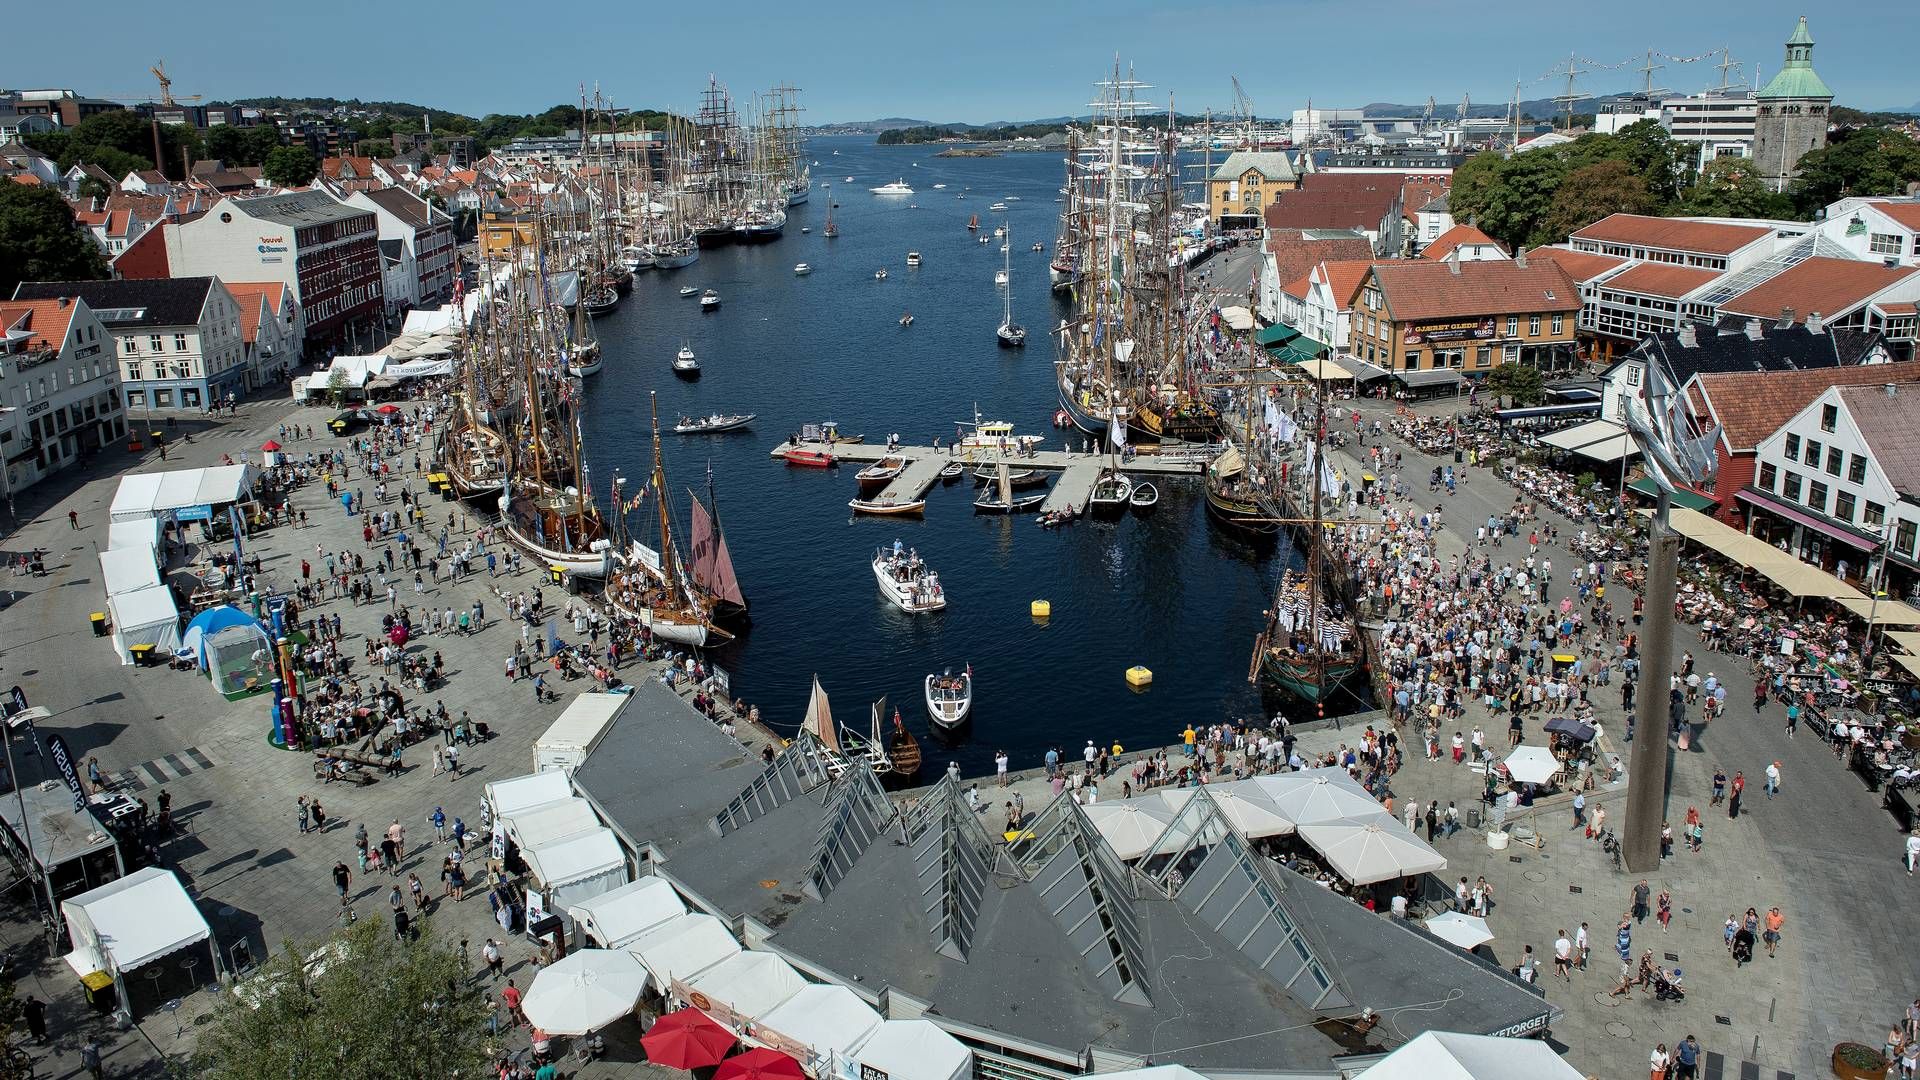 OPPSVING: Handelsbanken skriver i sin ferske markedsrapport at Stavanger vil få et sterkt oppsving i boligprisene som følge av økt aktivitet i petroleumssektoren. | Foto: Foto: Carina Johansen / NTB